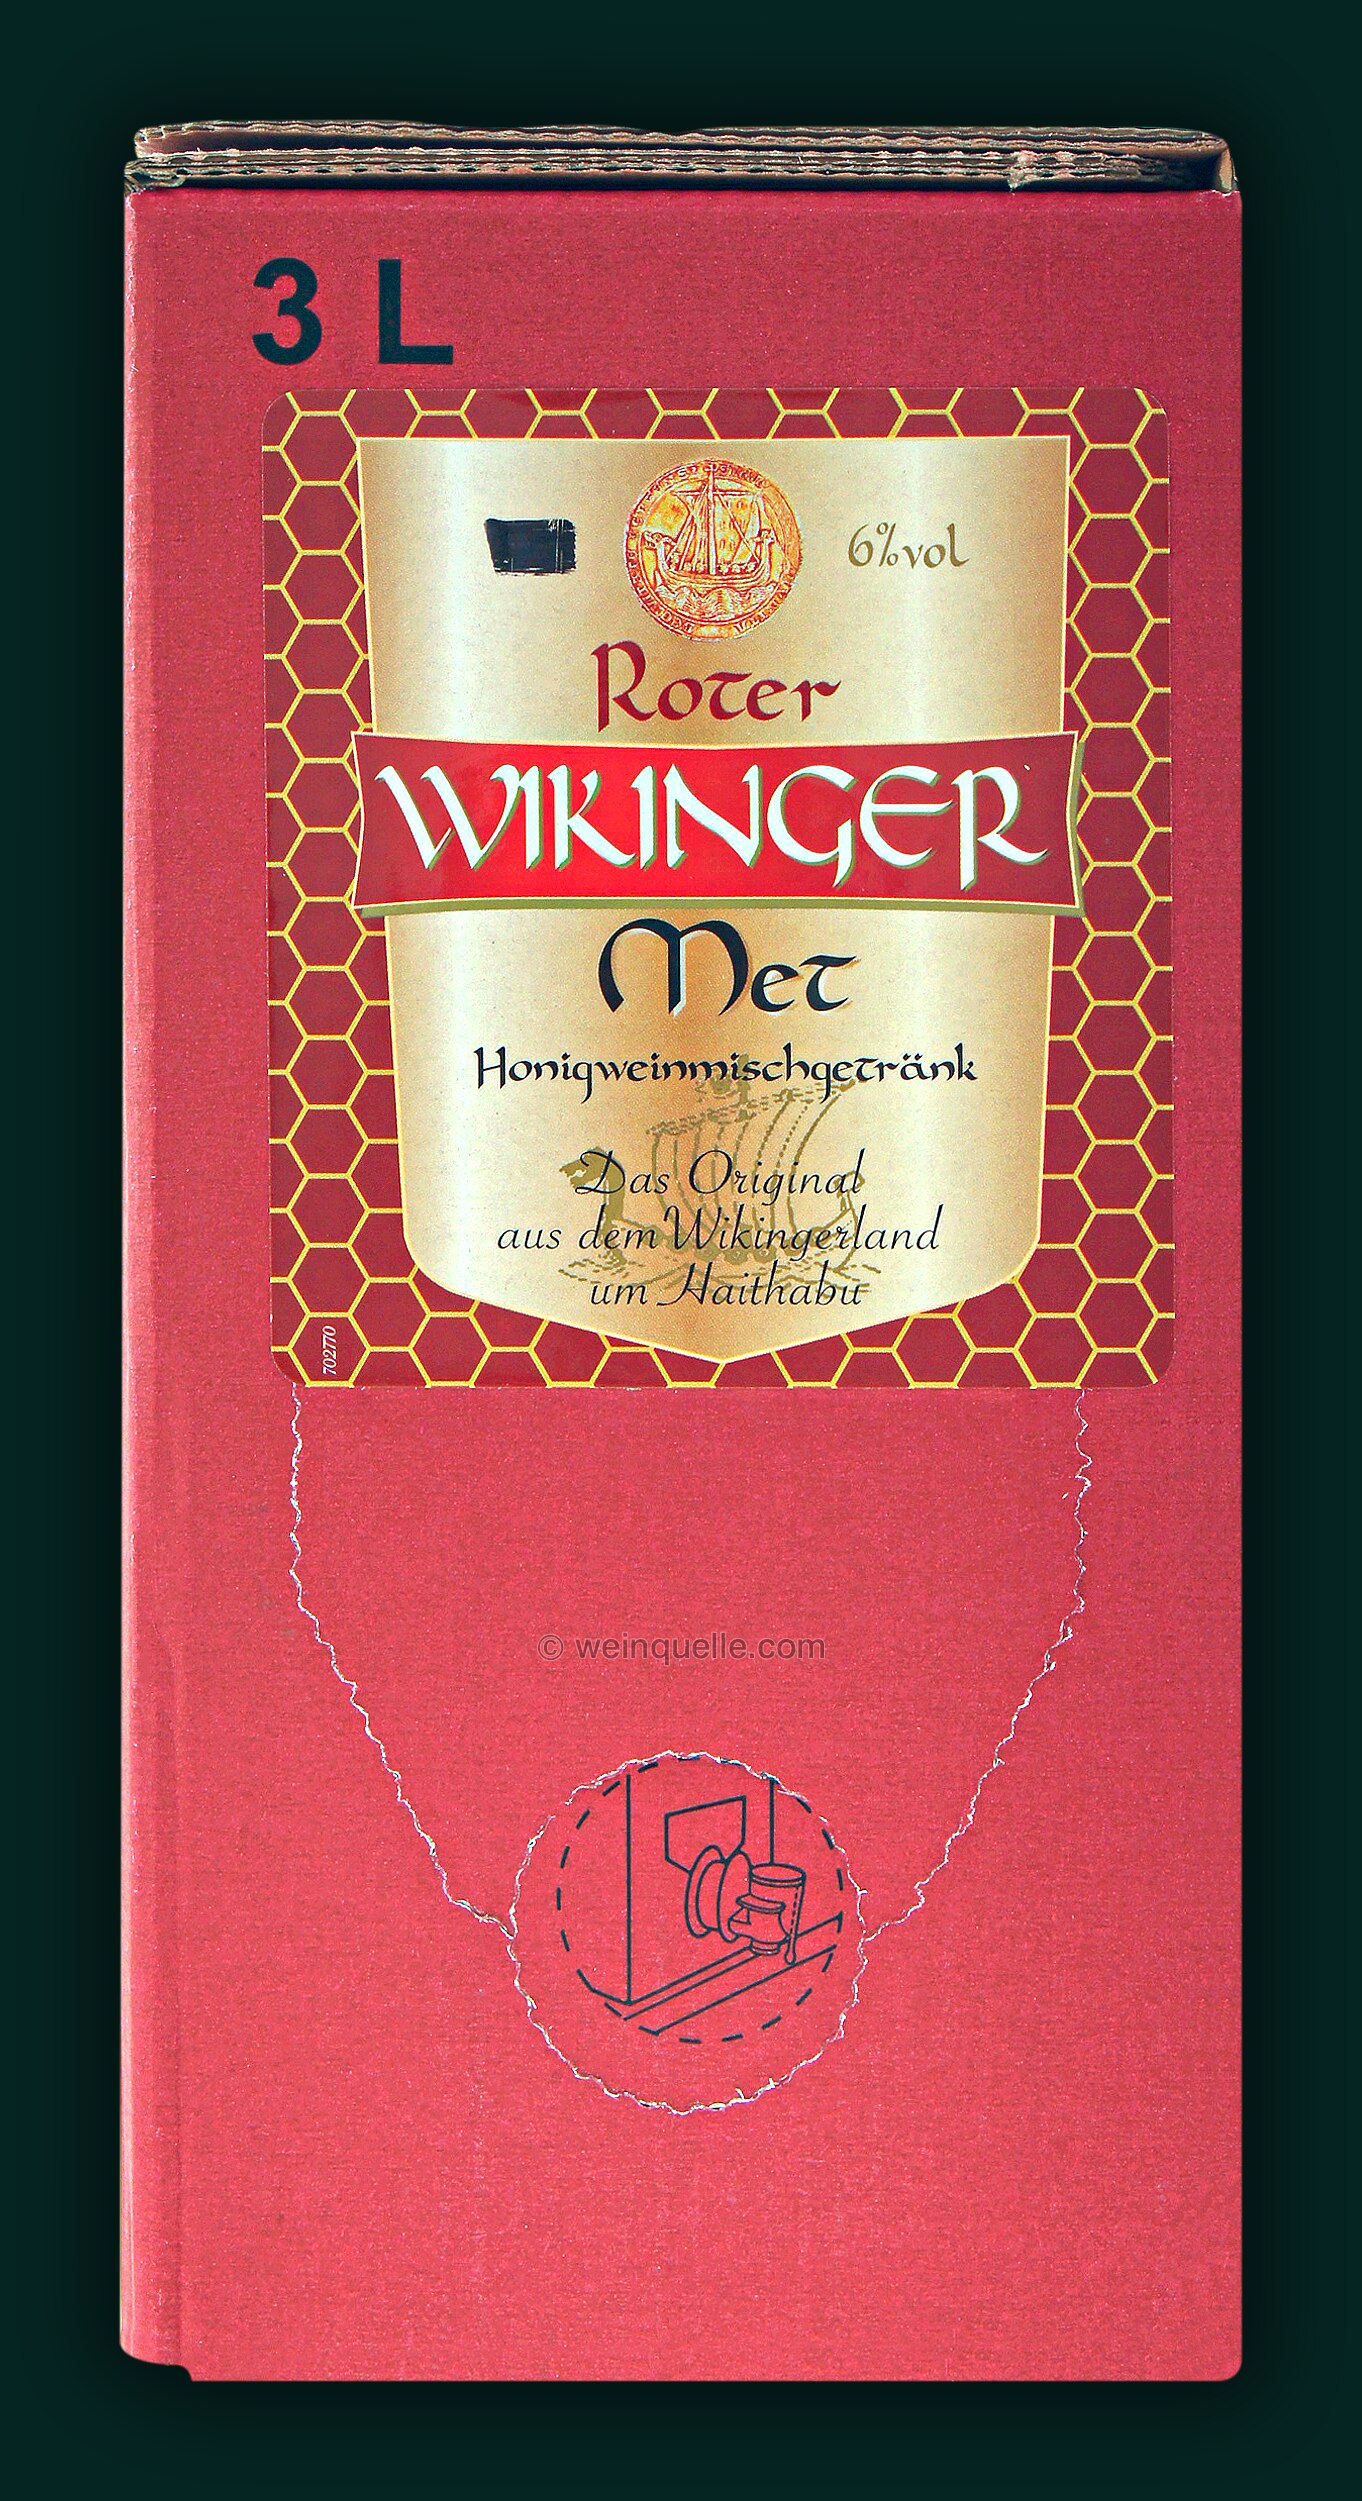 Met Roter Met Wikinger (Honigwein mit Kirschsaft) 3,0 Liter Bag in Box,  23,95 € - Weinquelle Lühmann